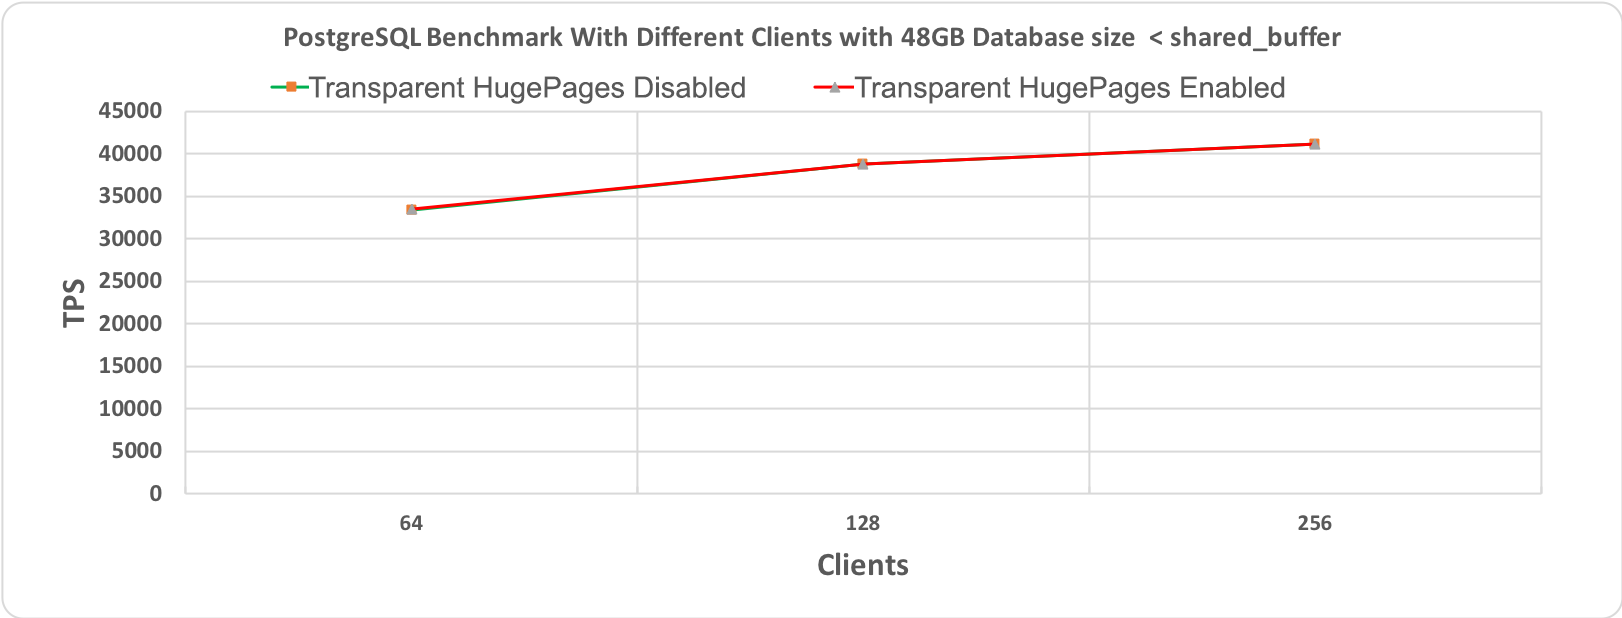 Рис. 2.1 Тест производительности PostgreSQL, длительность 60 минут при размере базы данных (48 гигабайт) < shared_buffer (64 гигабайт)